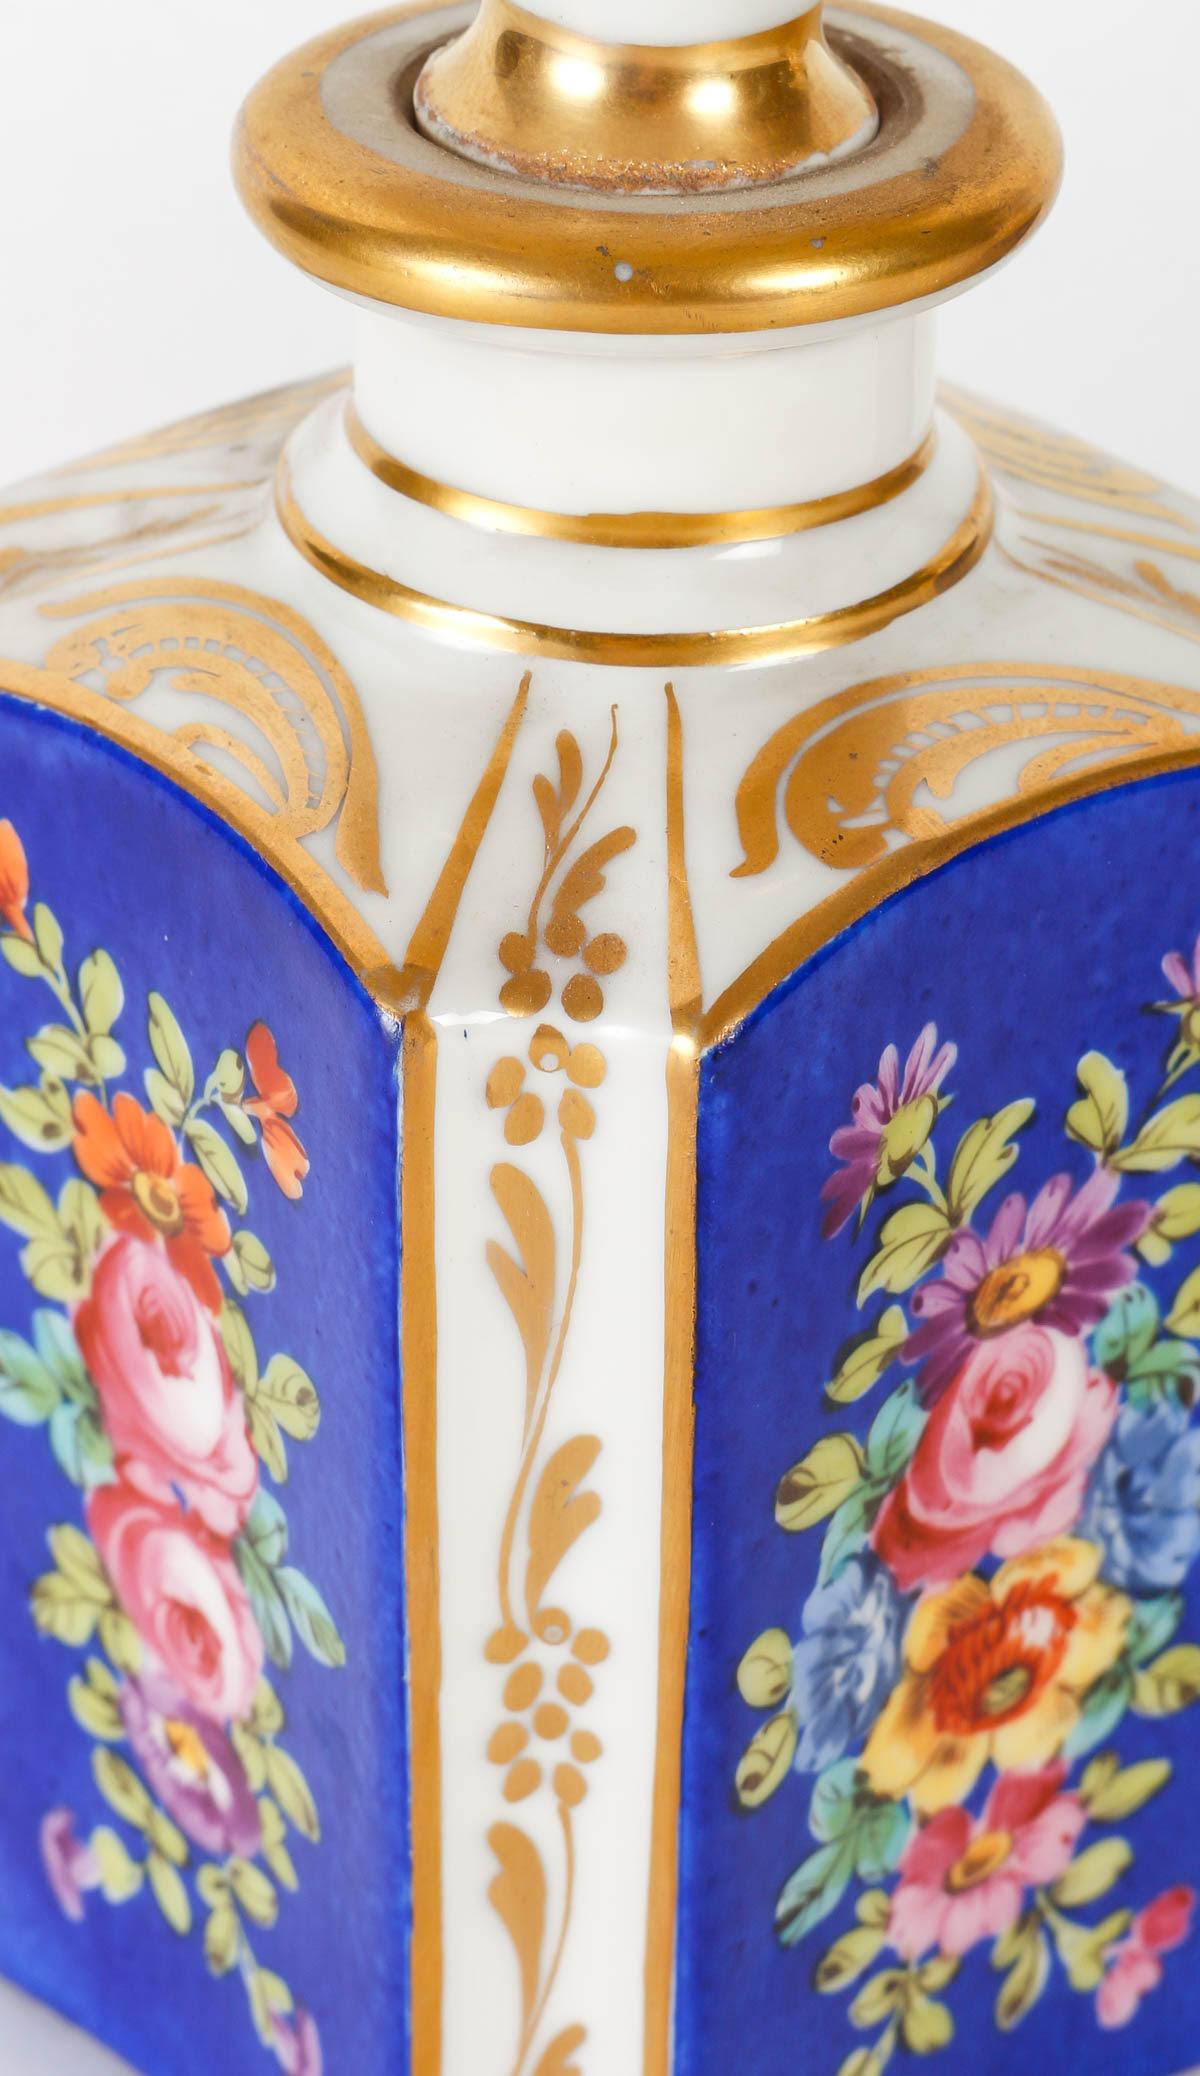 Paire de flacons en porcelaine dorée et peinte à la main, période Napoléon III.

Paire de flacons en porcelaine du XIXe siècle avec leur bouchon, décor peint à la main et doré, période Napoléon III.

Dimensions : h : 16cm, w : 7cm, d : 7cm